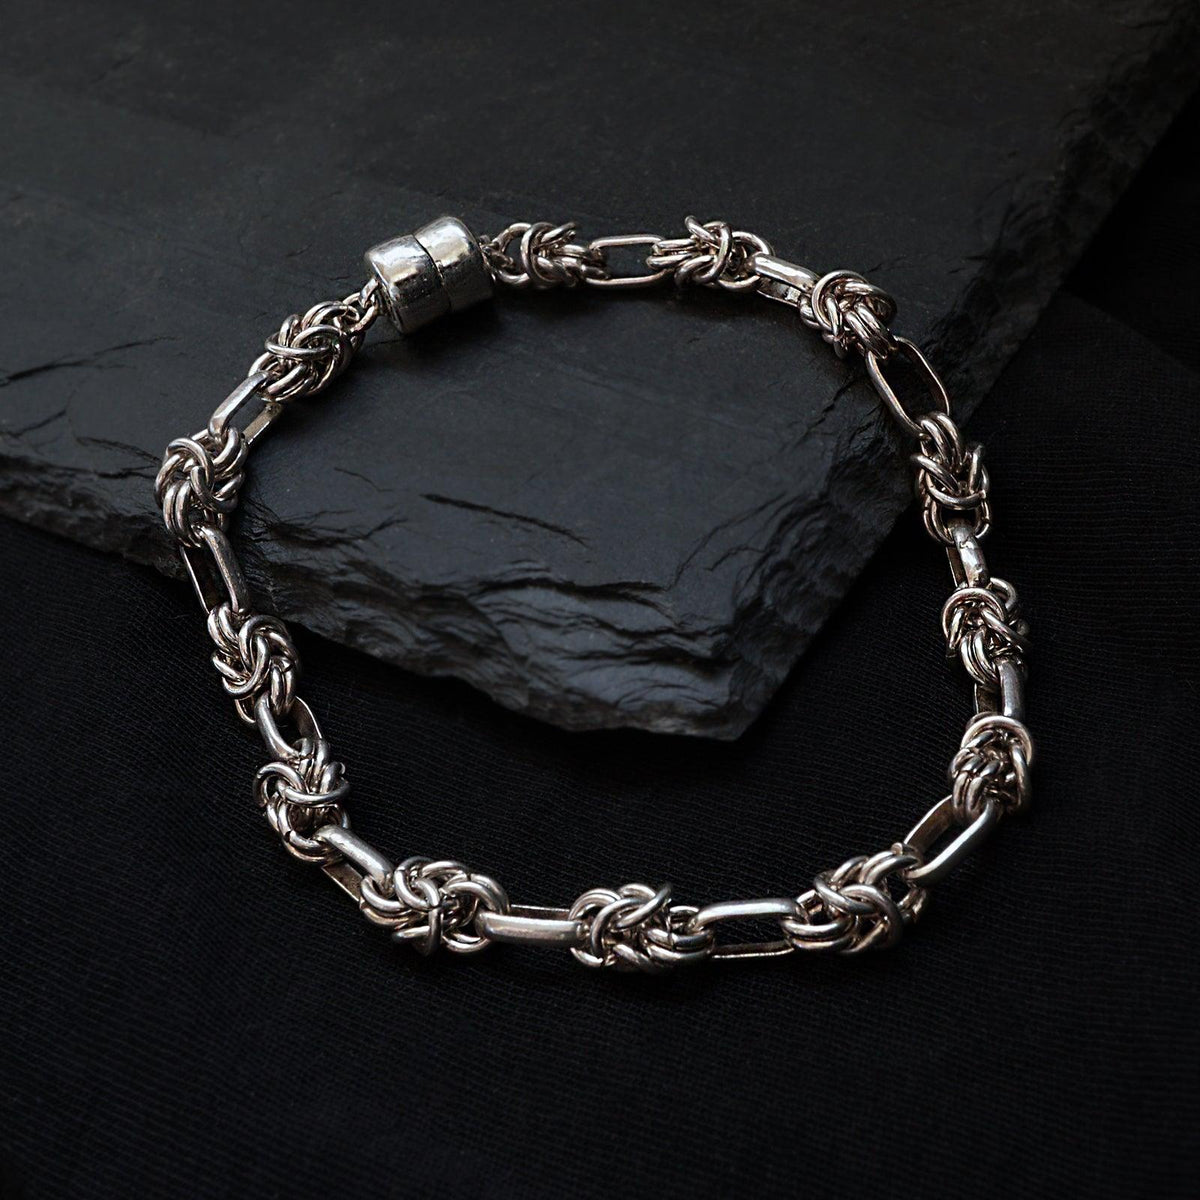 Serpent Knot Bracelet - Tippy Taste Jewelry